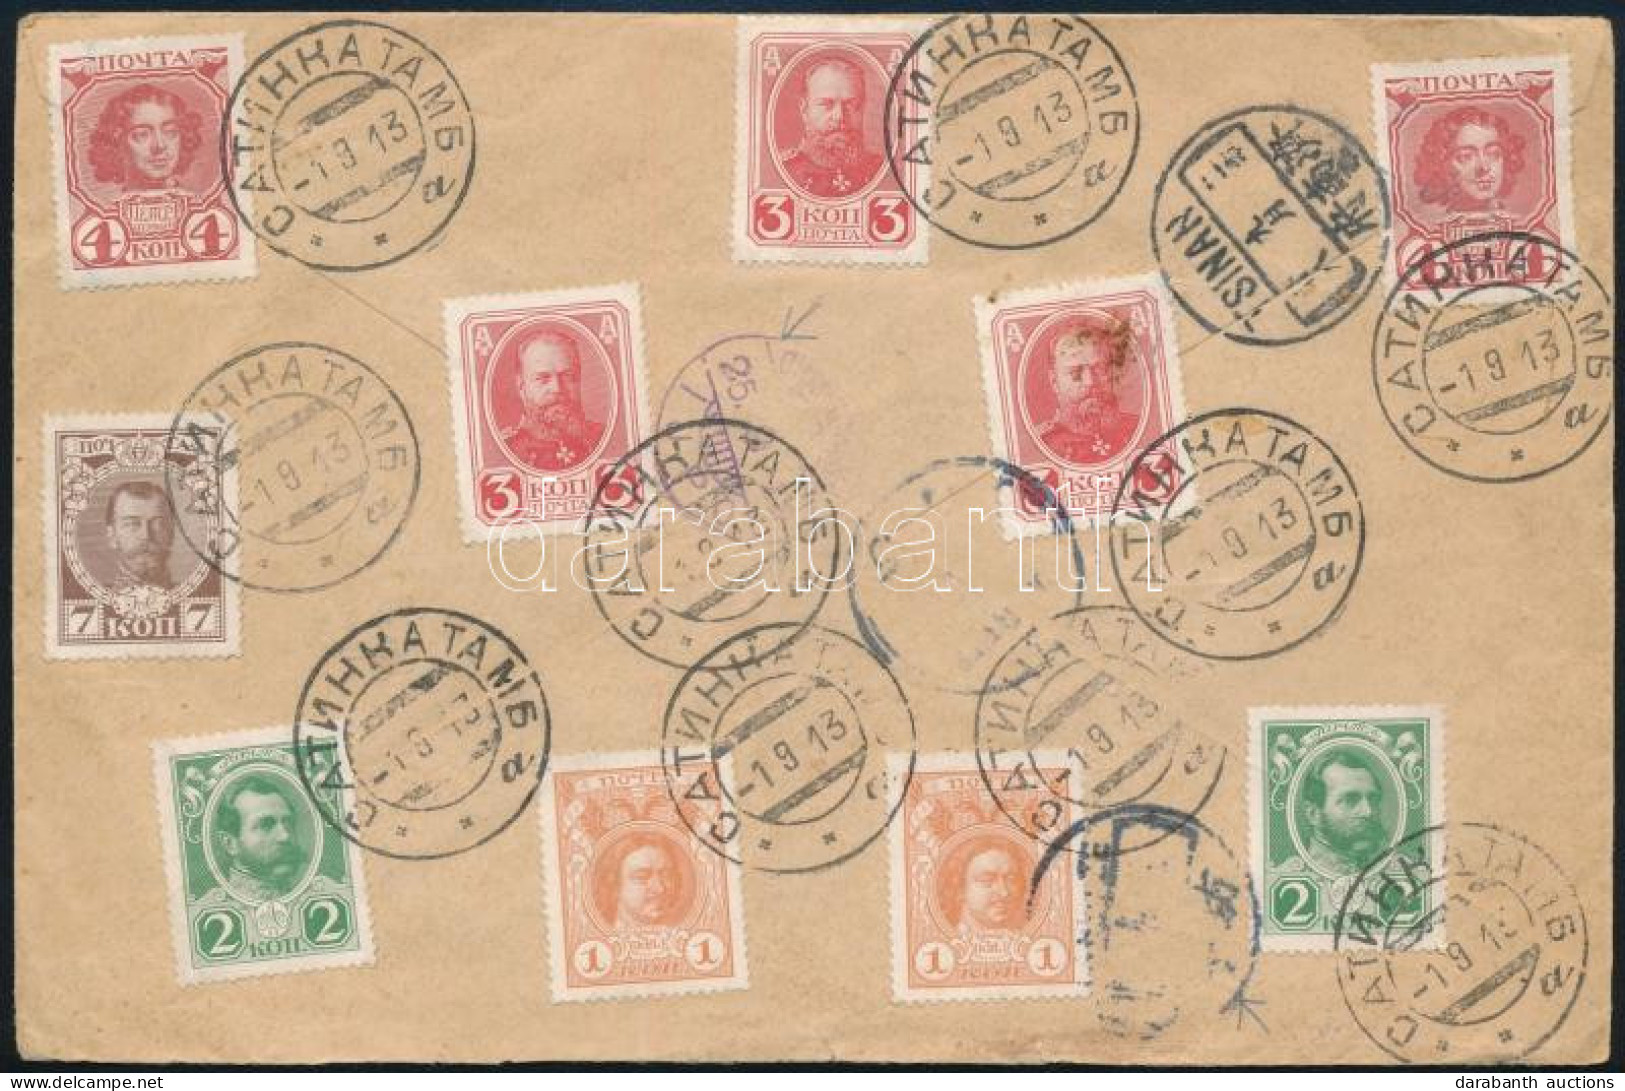 1913 Ajánlott Levél Kínába 10 Db Bélyeggel Bérmentesítve / Registered Cover With 10 Stamps Franking To China - Other & Unclassified